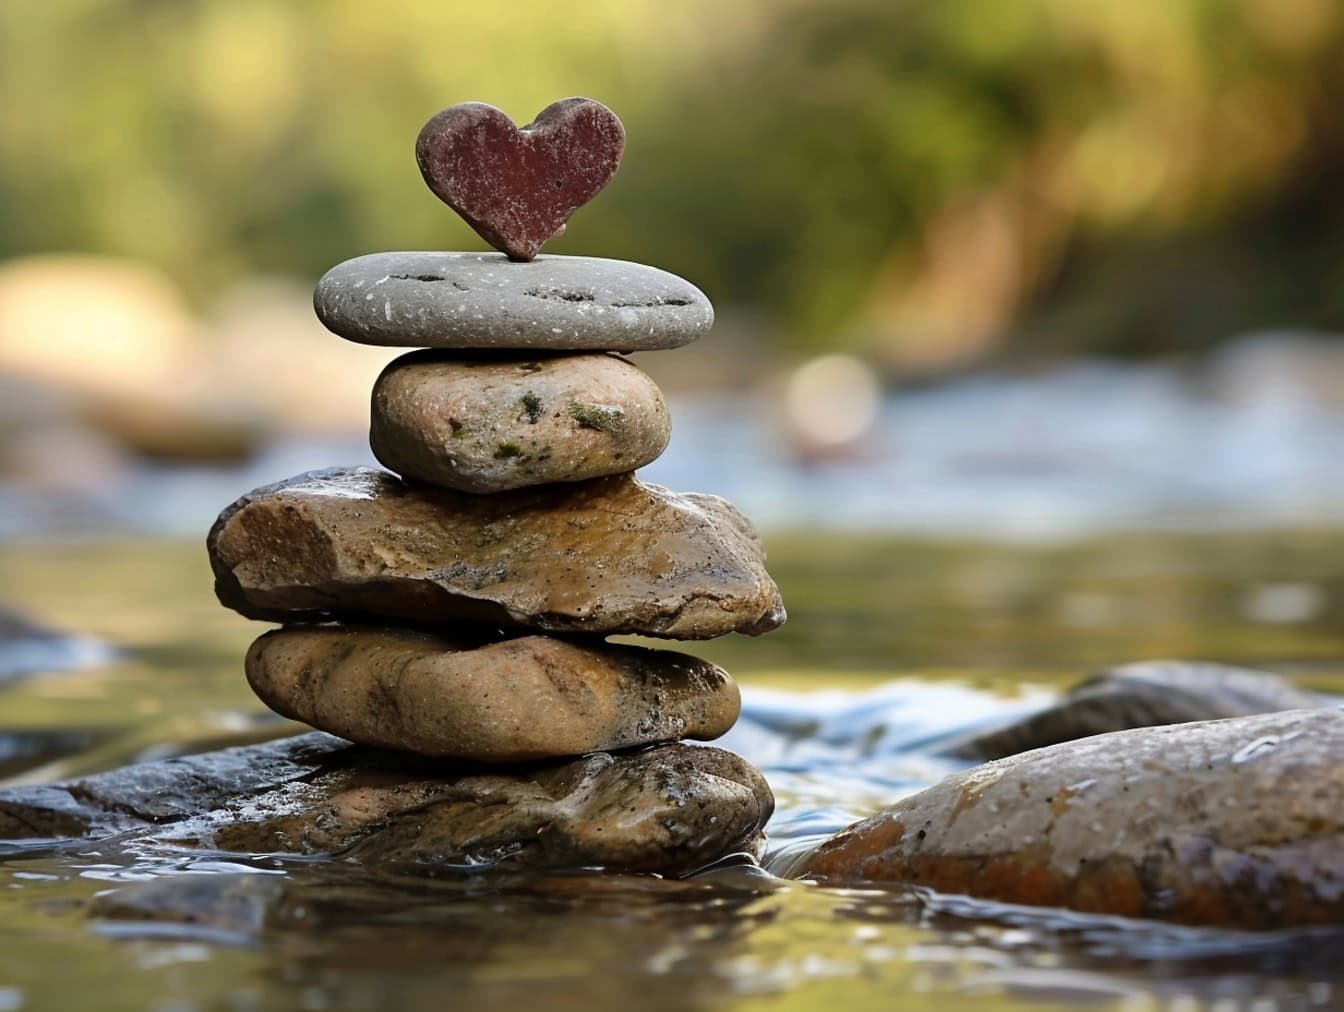 Pinottuja kiviä päällekkäin joen rannalla, jonka yläosassa on sydämenmuotoinen kivi, esimerkki tasapainosta ja harmoniasta rakkaudessa